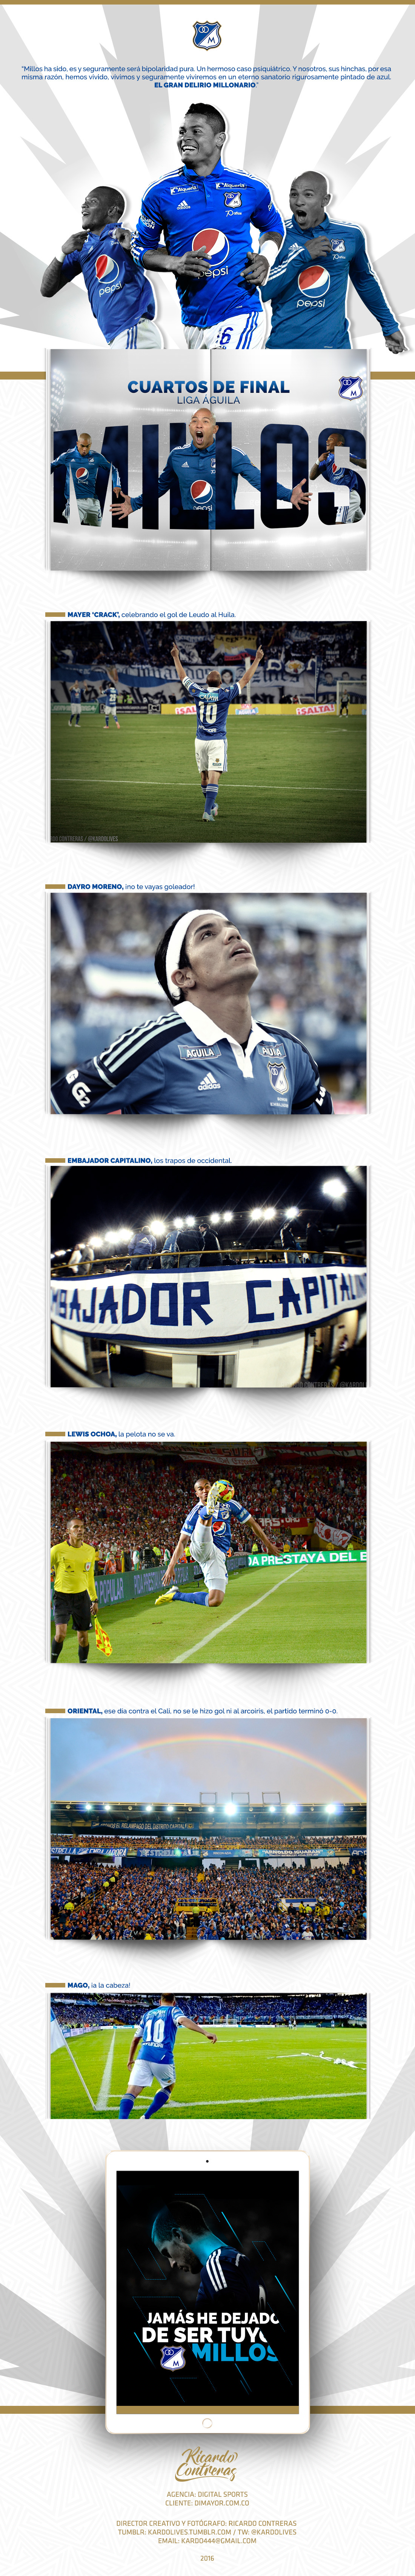 MILLONARIOS Millos azules bogota colombia Futbol soccer publicidad futbolete